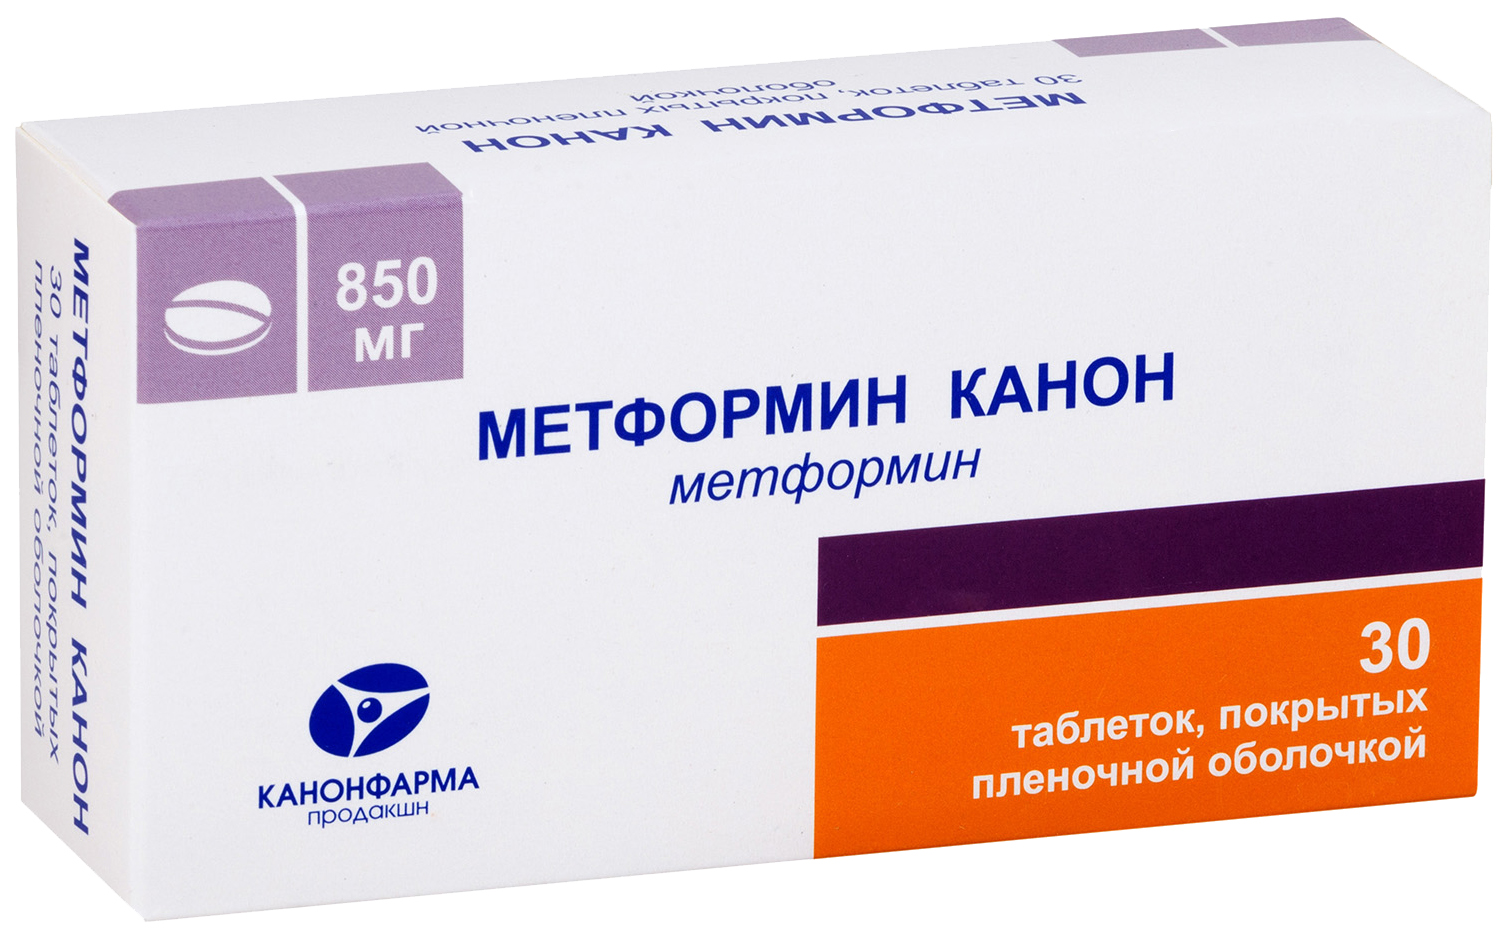 Купить Метформин-Канон таблетки, покрытые пленочной оболочкой 850 мг №30, Канонфарма продакшн ЗАО, Россия